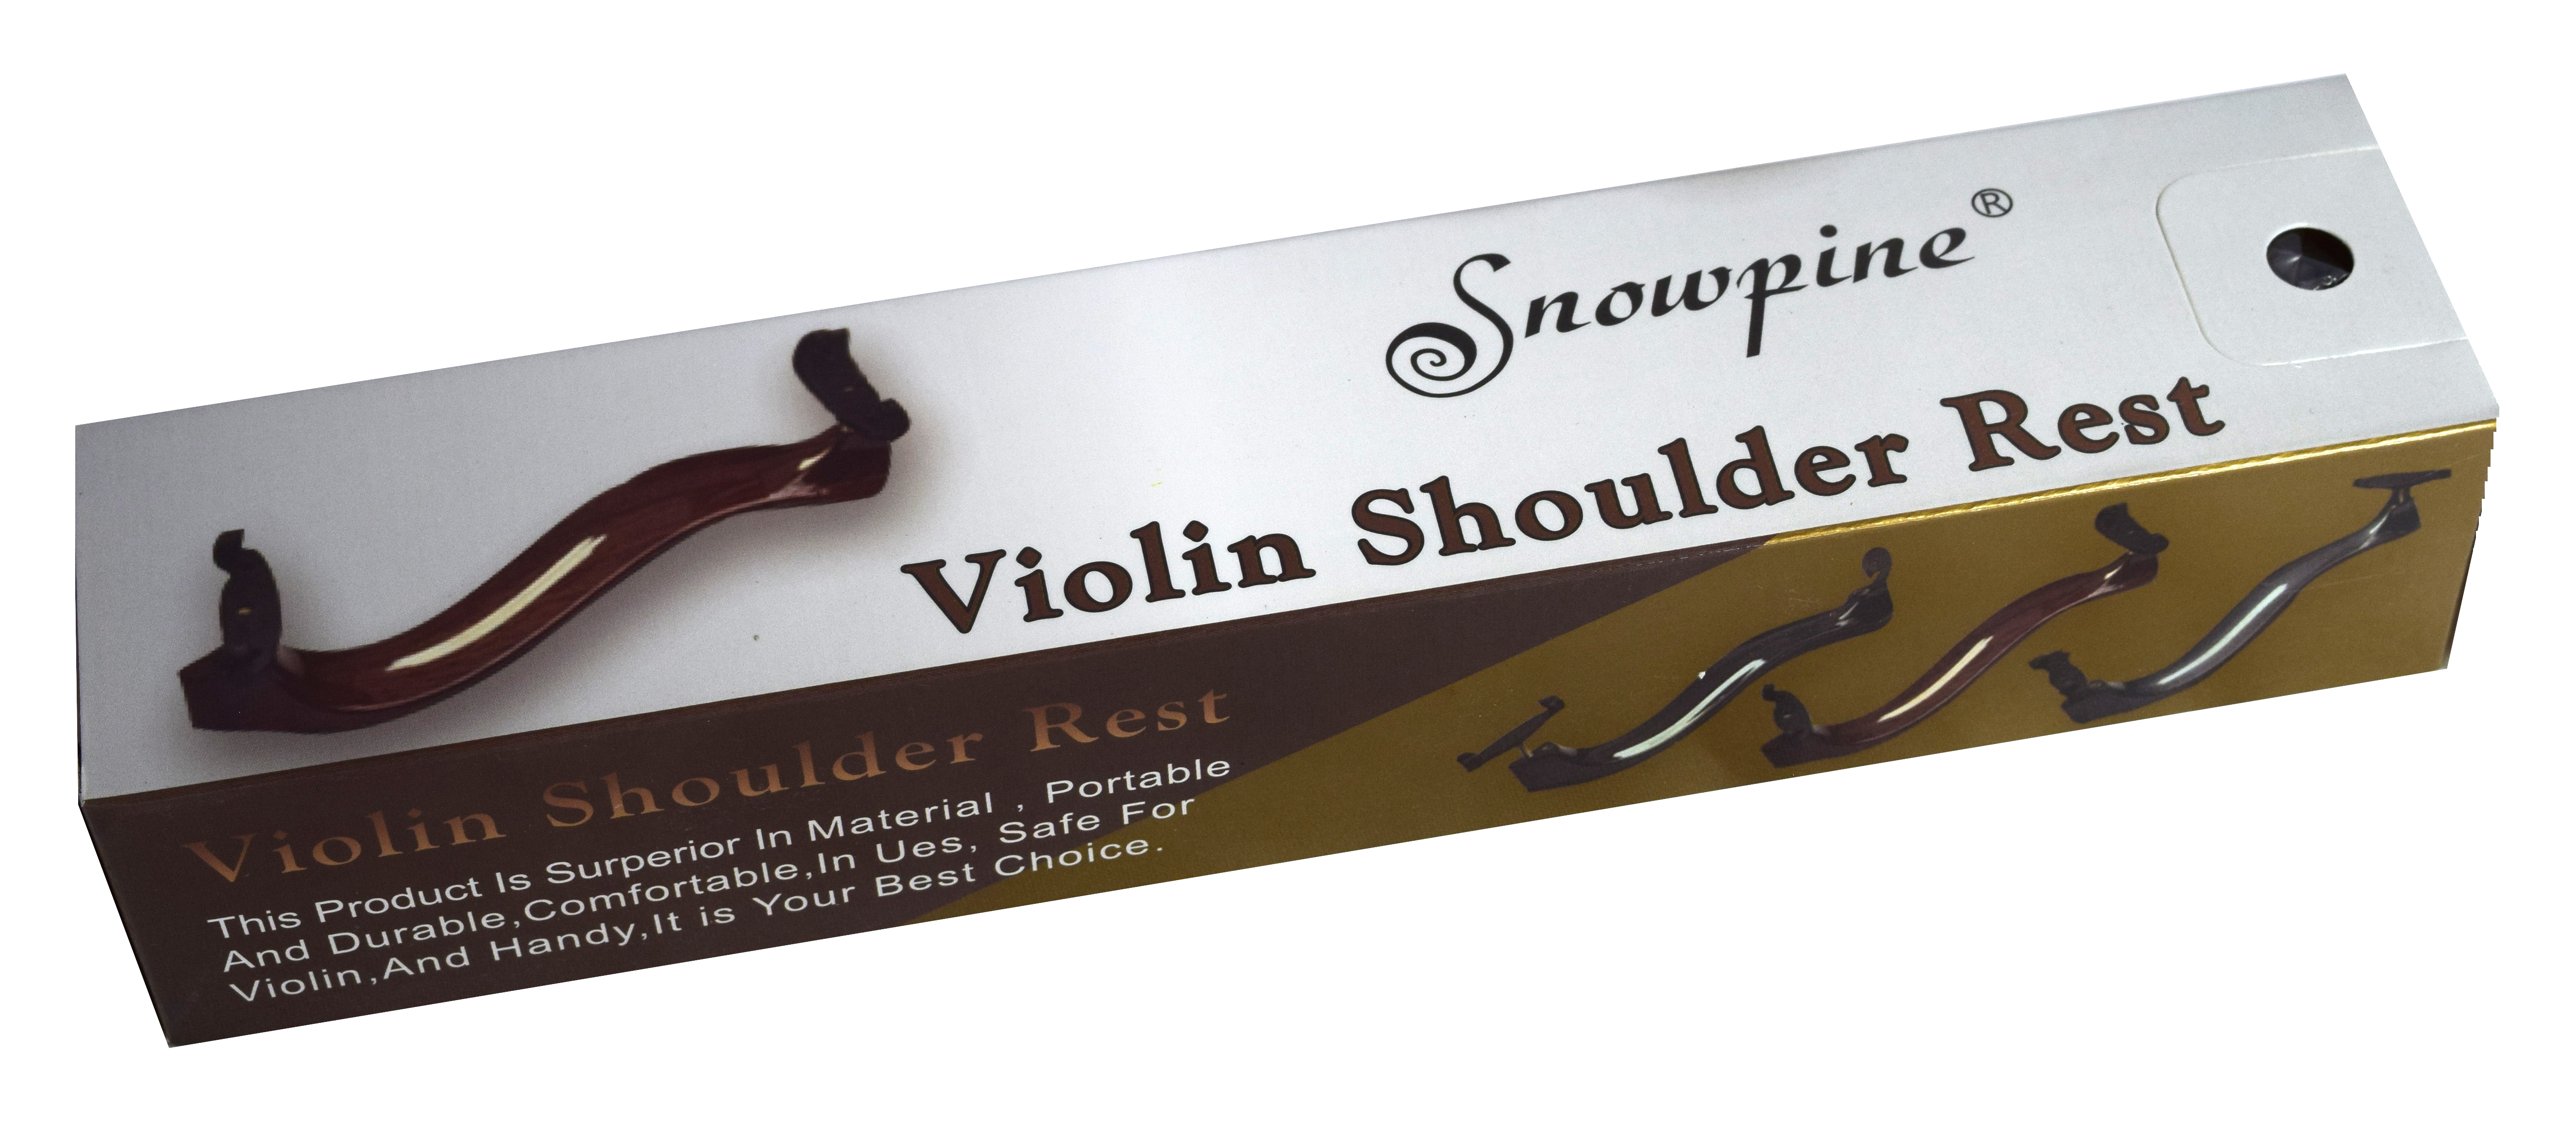 Snowpine Violin Shoulder Rest 1/2